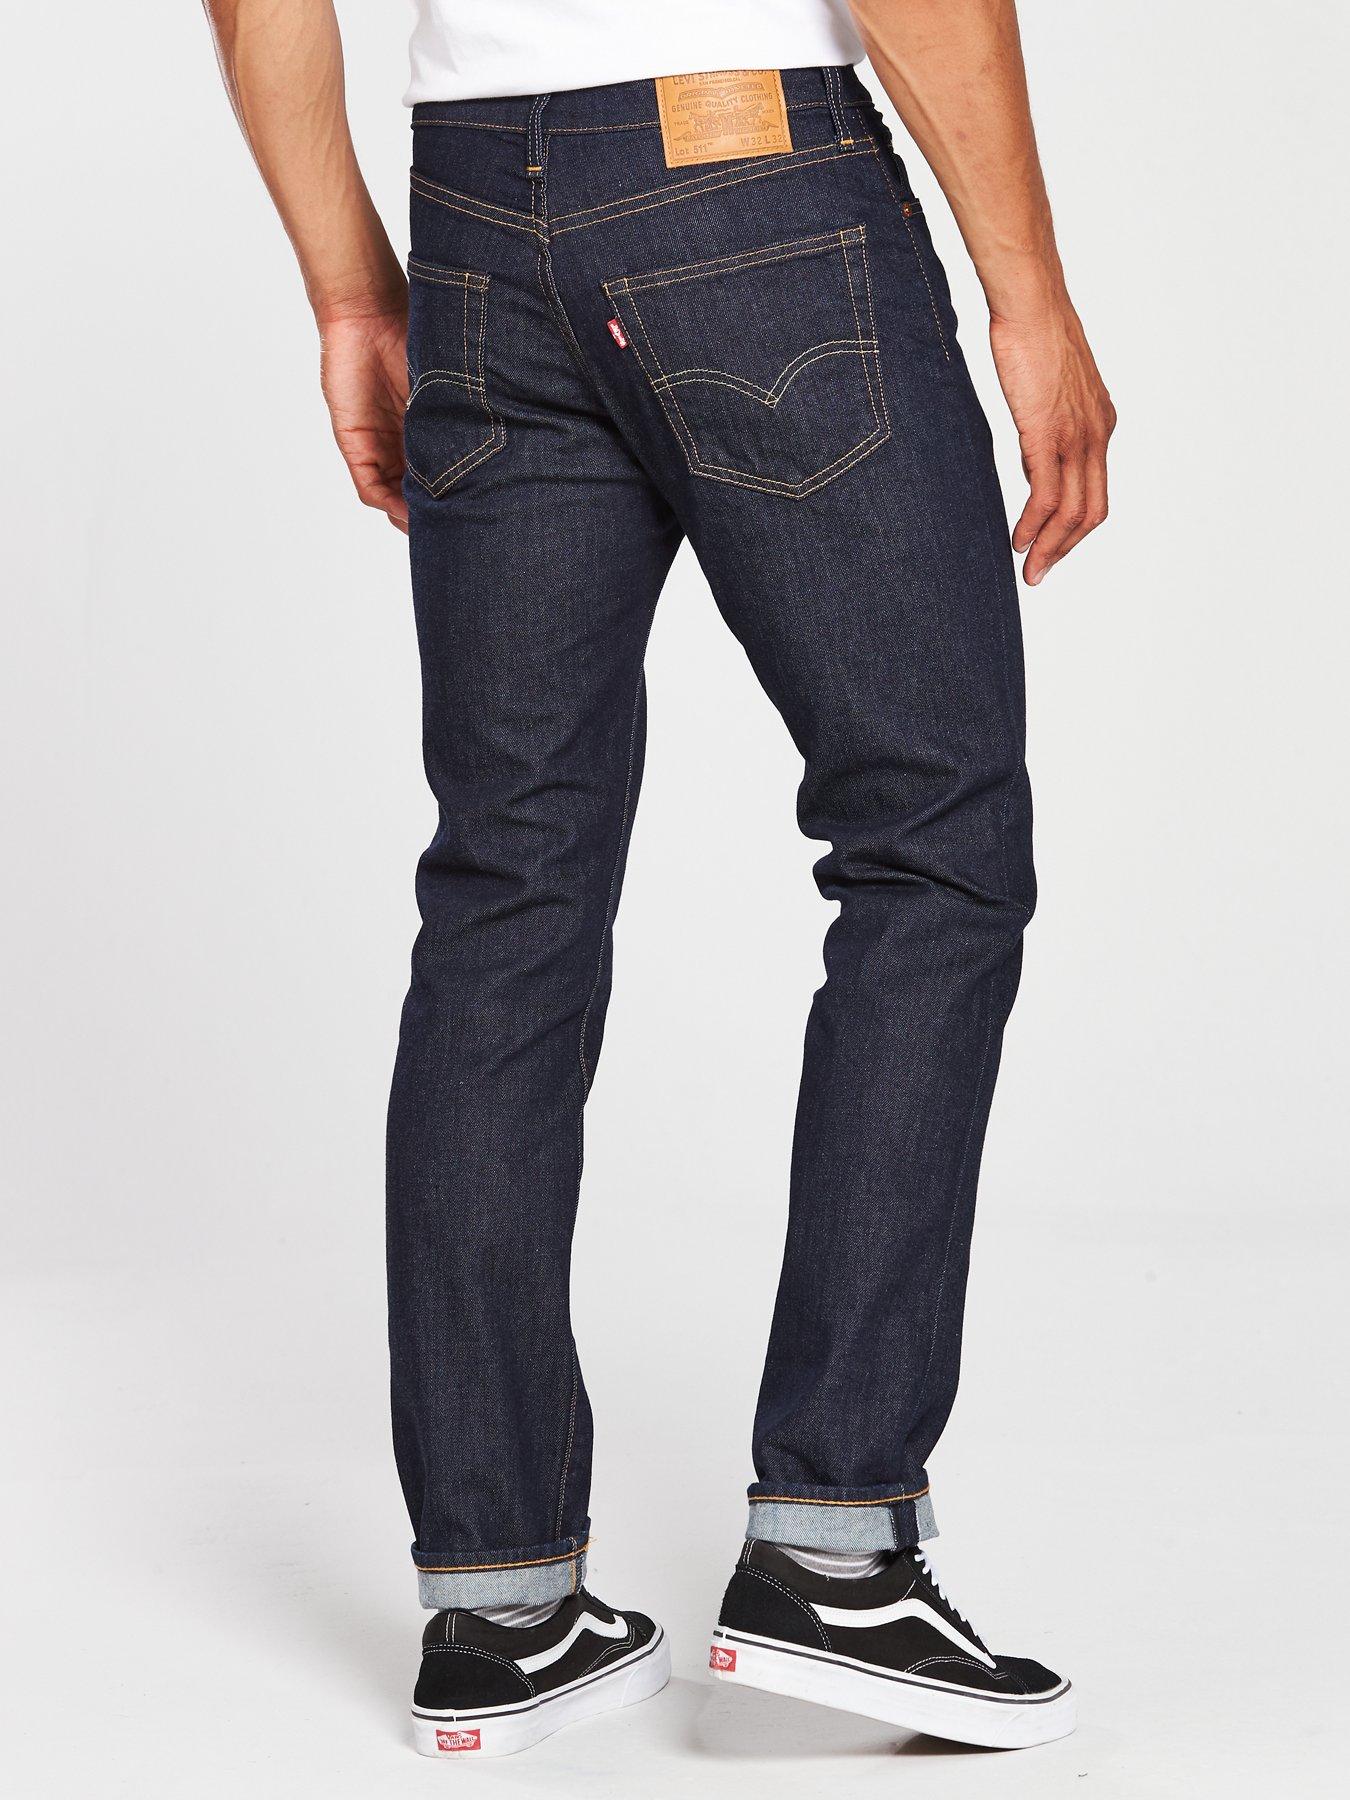 Levi's 511 Slim Fit Jeans - Rock Cod 